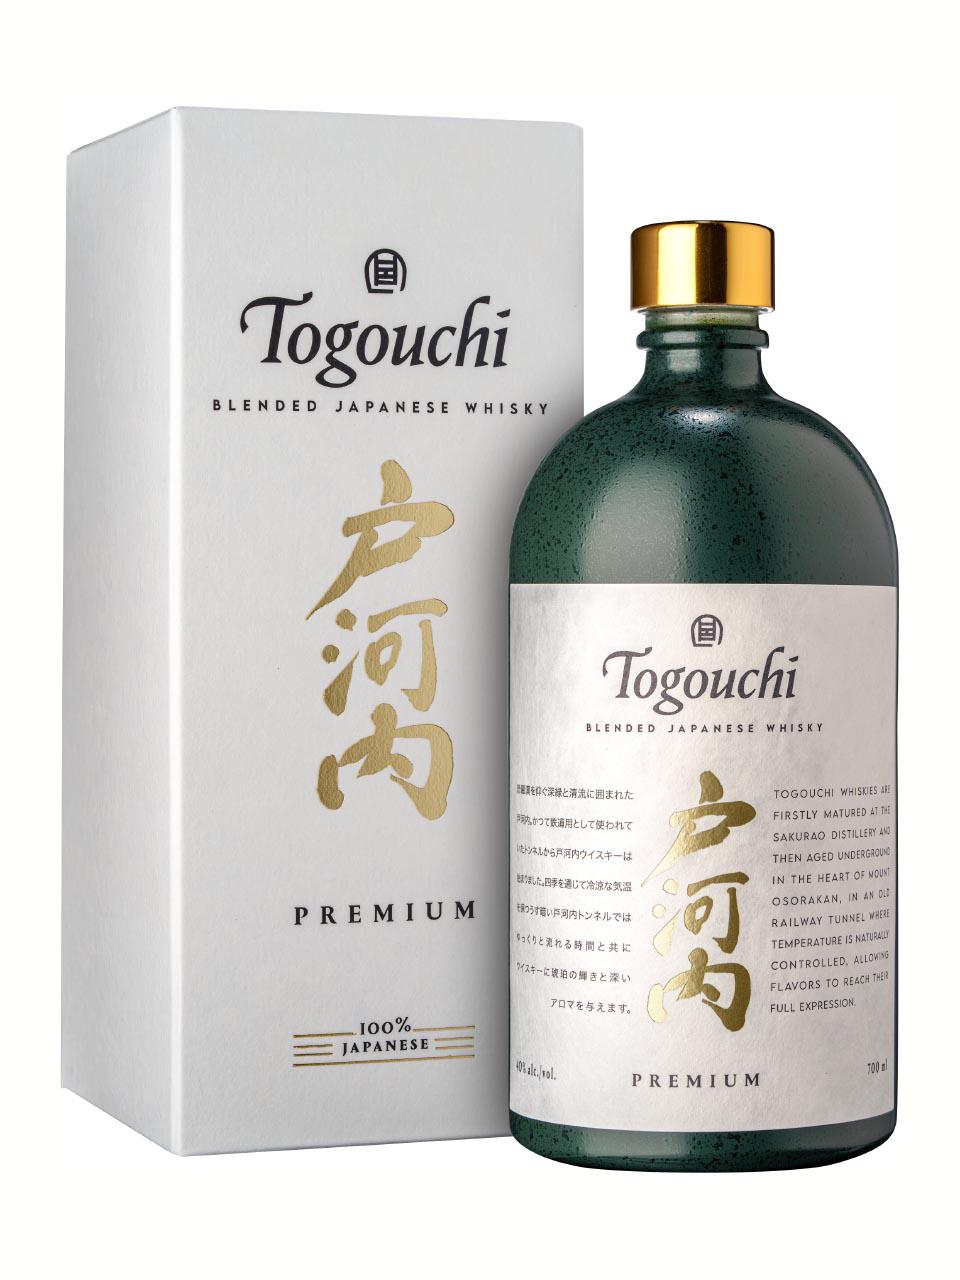 Togouchi 9 year old Whisky